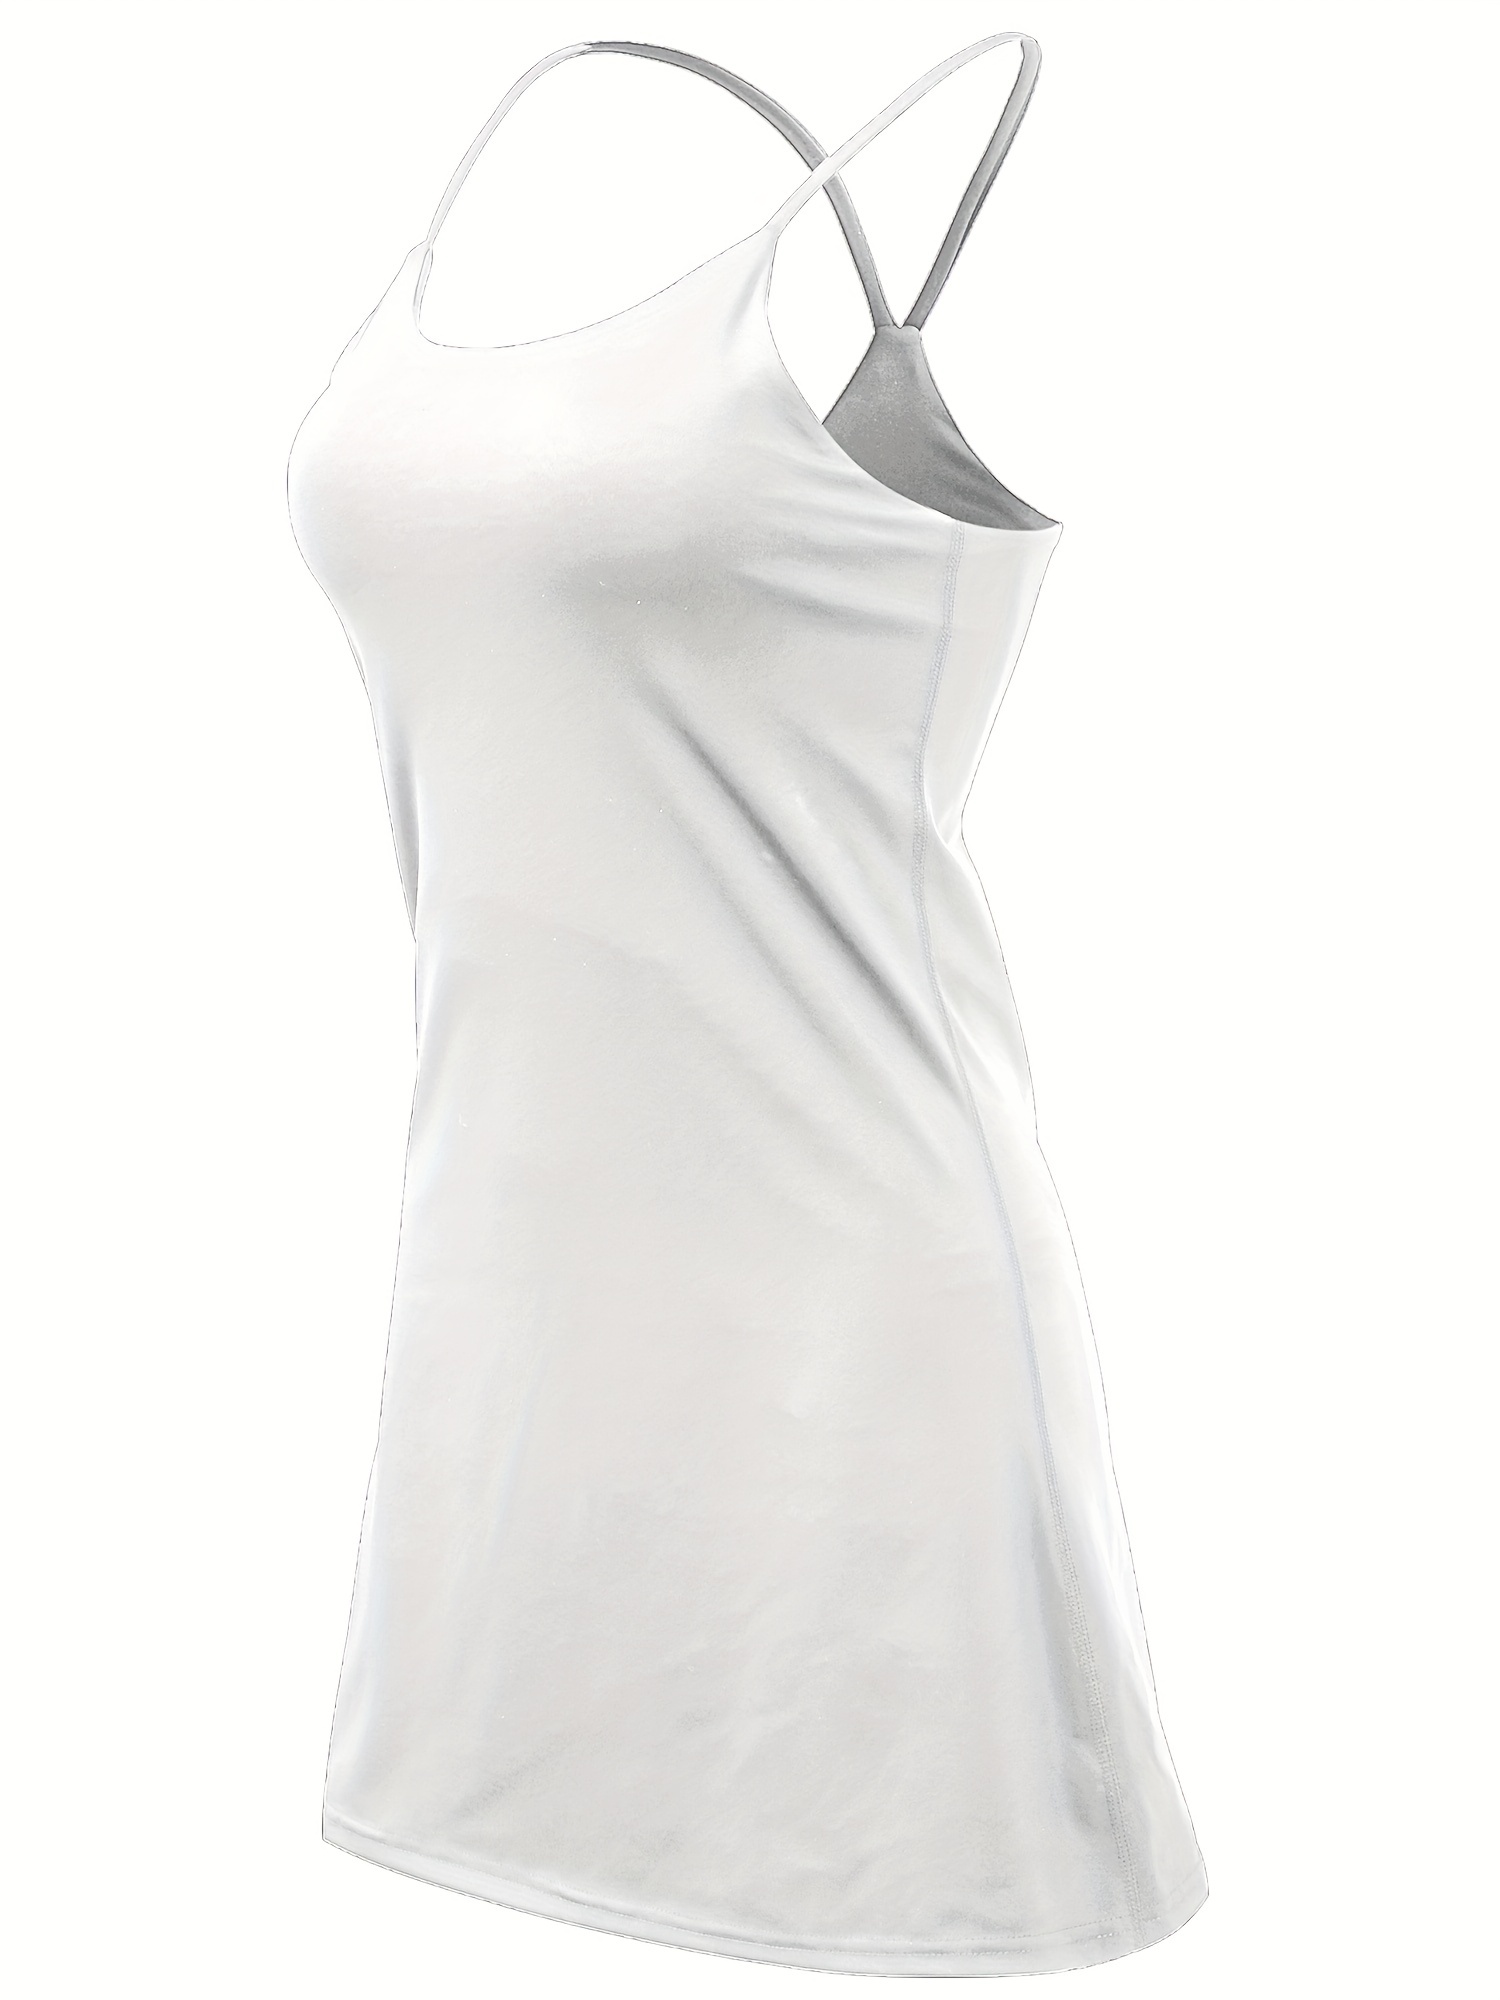 Women's Tennis Dress, Workout Golf Dress Built-in with Bra